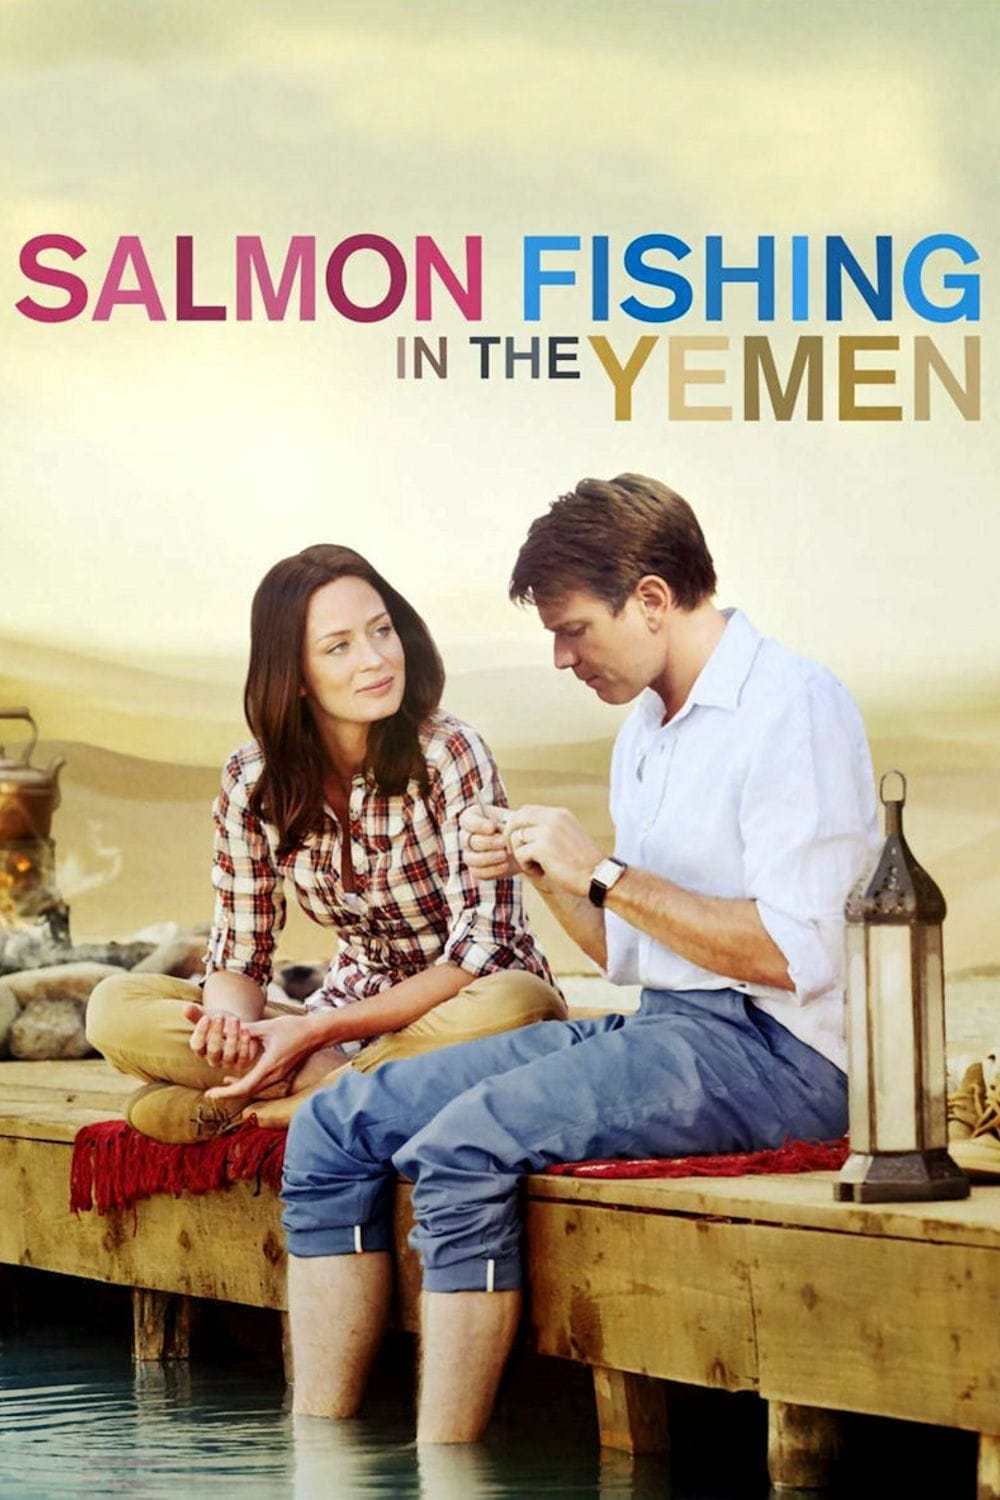 La pesca del salmon en Yemen